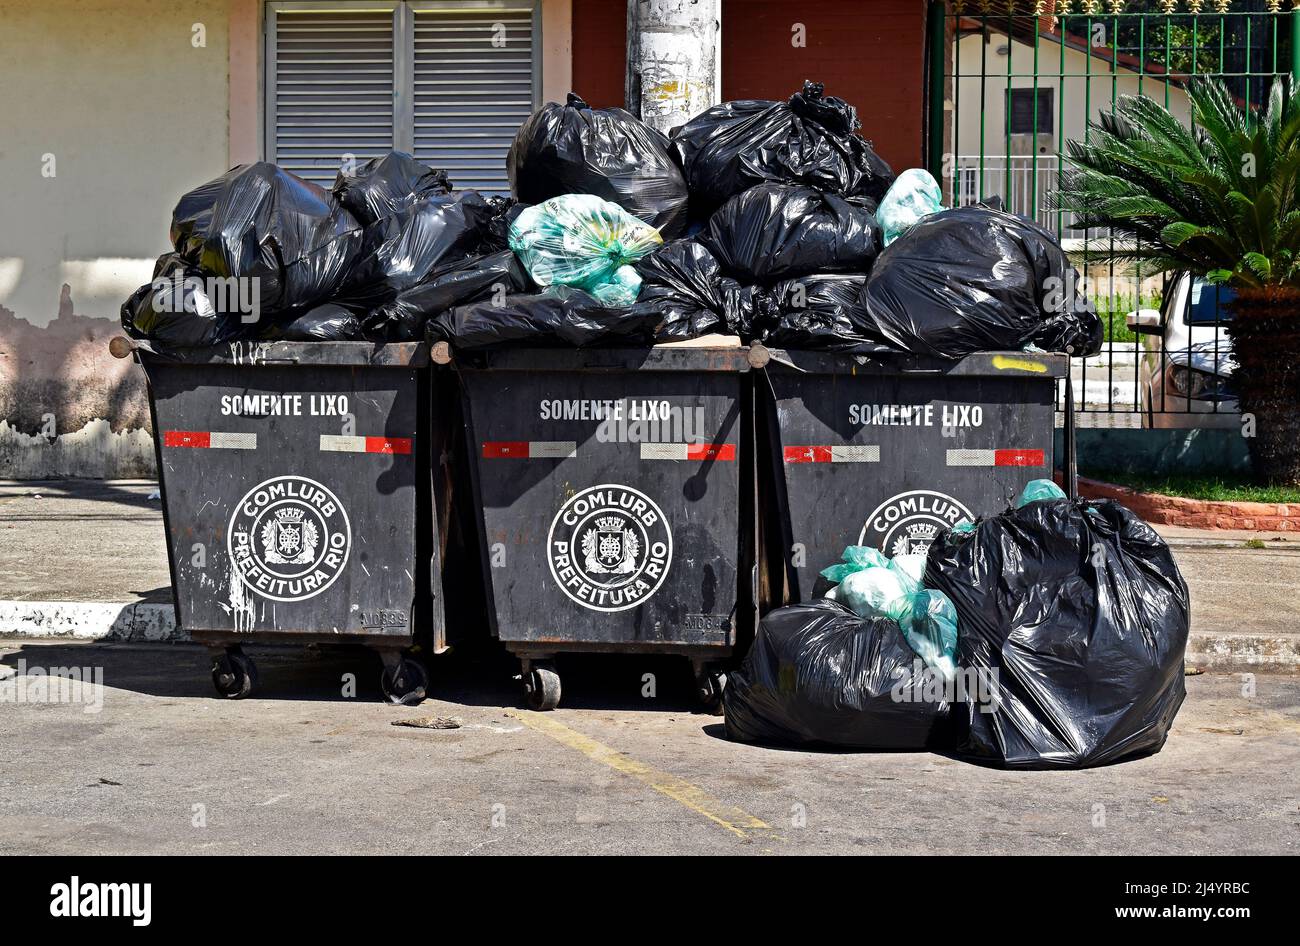 Mülltüten Mit Müll in Weißem Weiß Isoliert Stockfoto - Bild von inländisch,  voll: 267959110